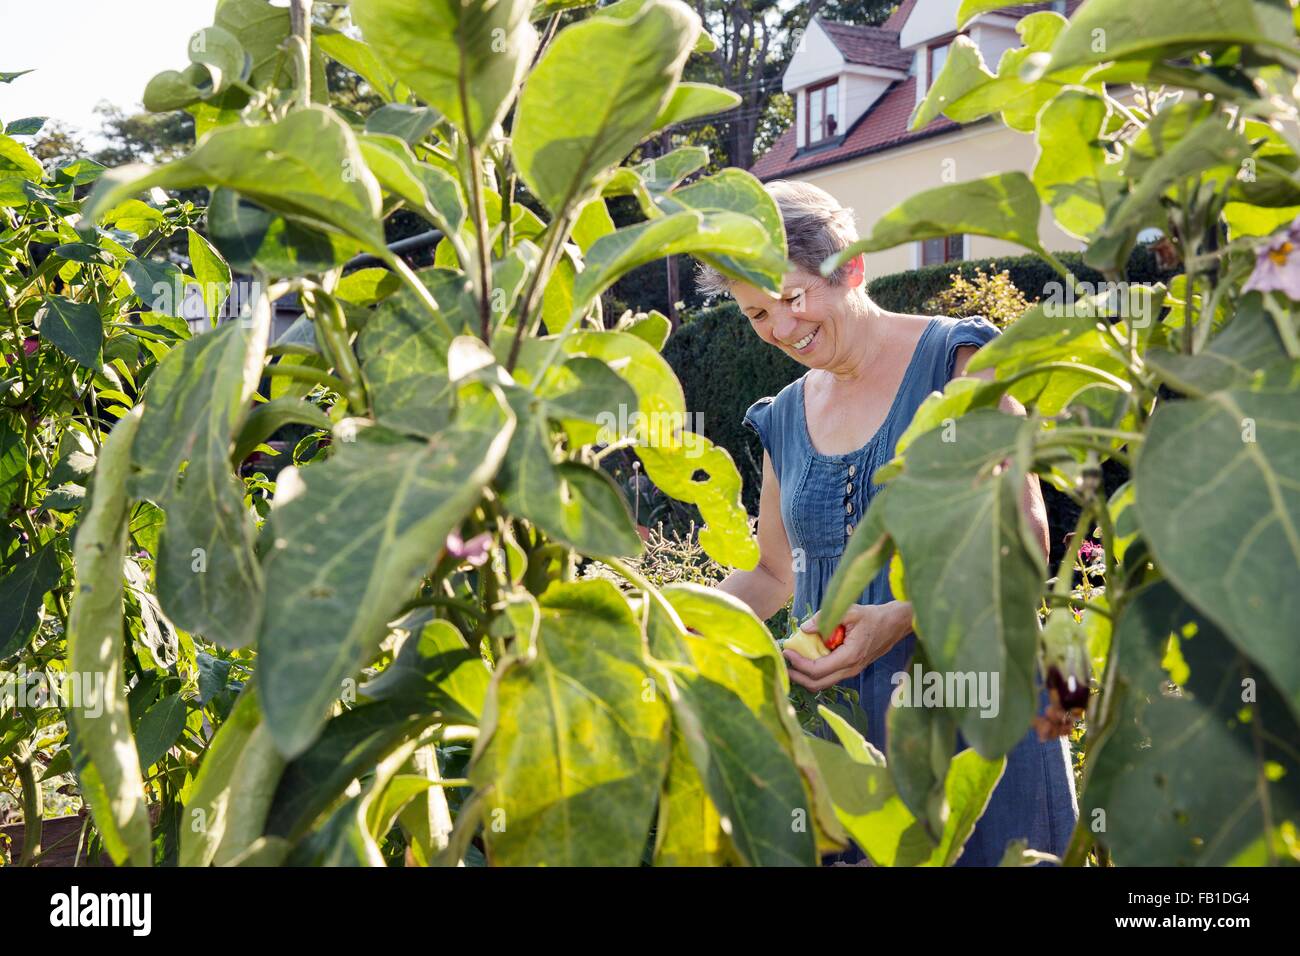 Mature woman gardening, picking fruit Stock Photo